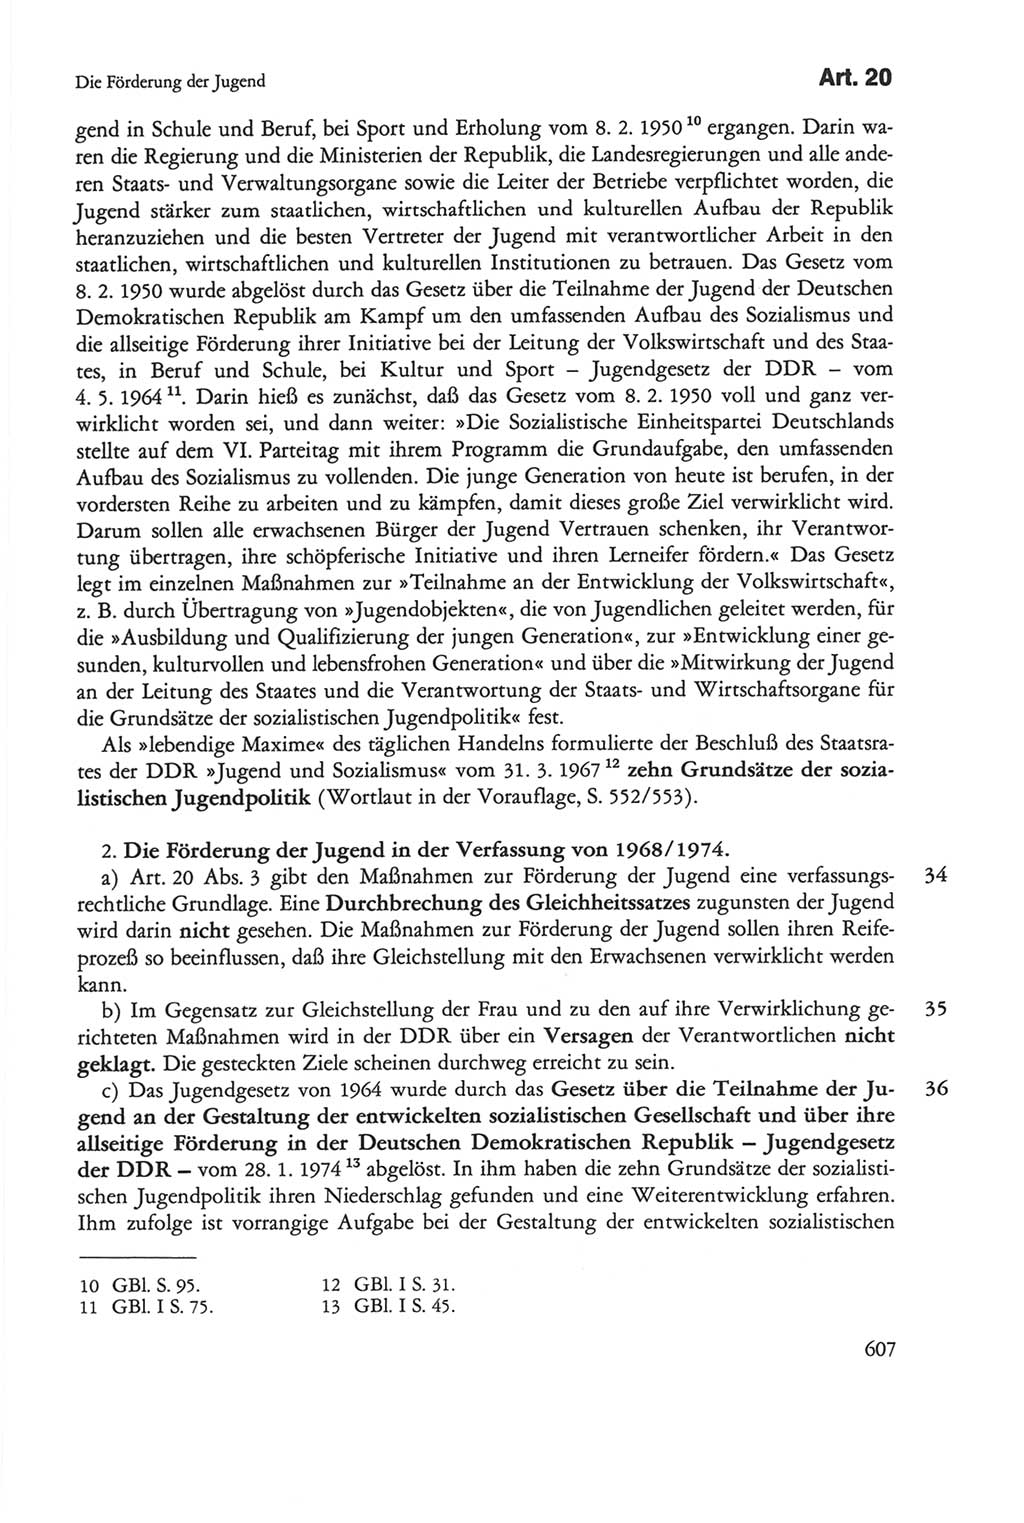 Die sozialistische Verfassung der Deutschen Demokratischen Republik (DDR), Kommentar mit einem Nachtrag 1997, Seite 607 (Soz. Verf. DDR Komm. Nachtr. 1997, S. 607)